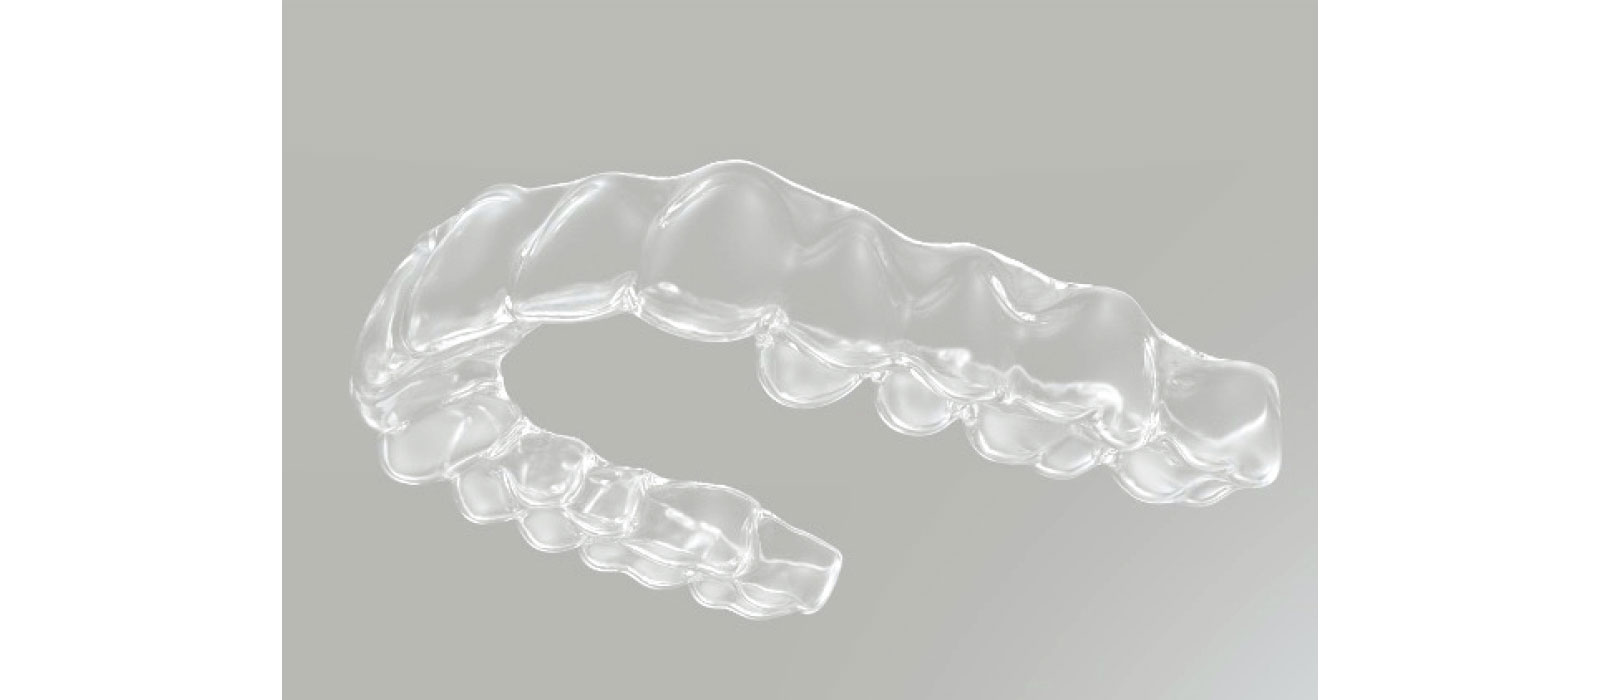 マウスピース型矯正歯科装置